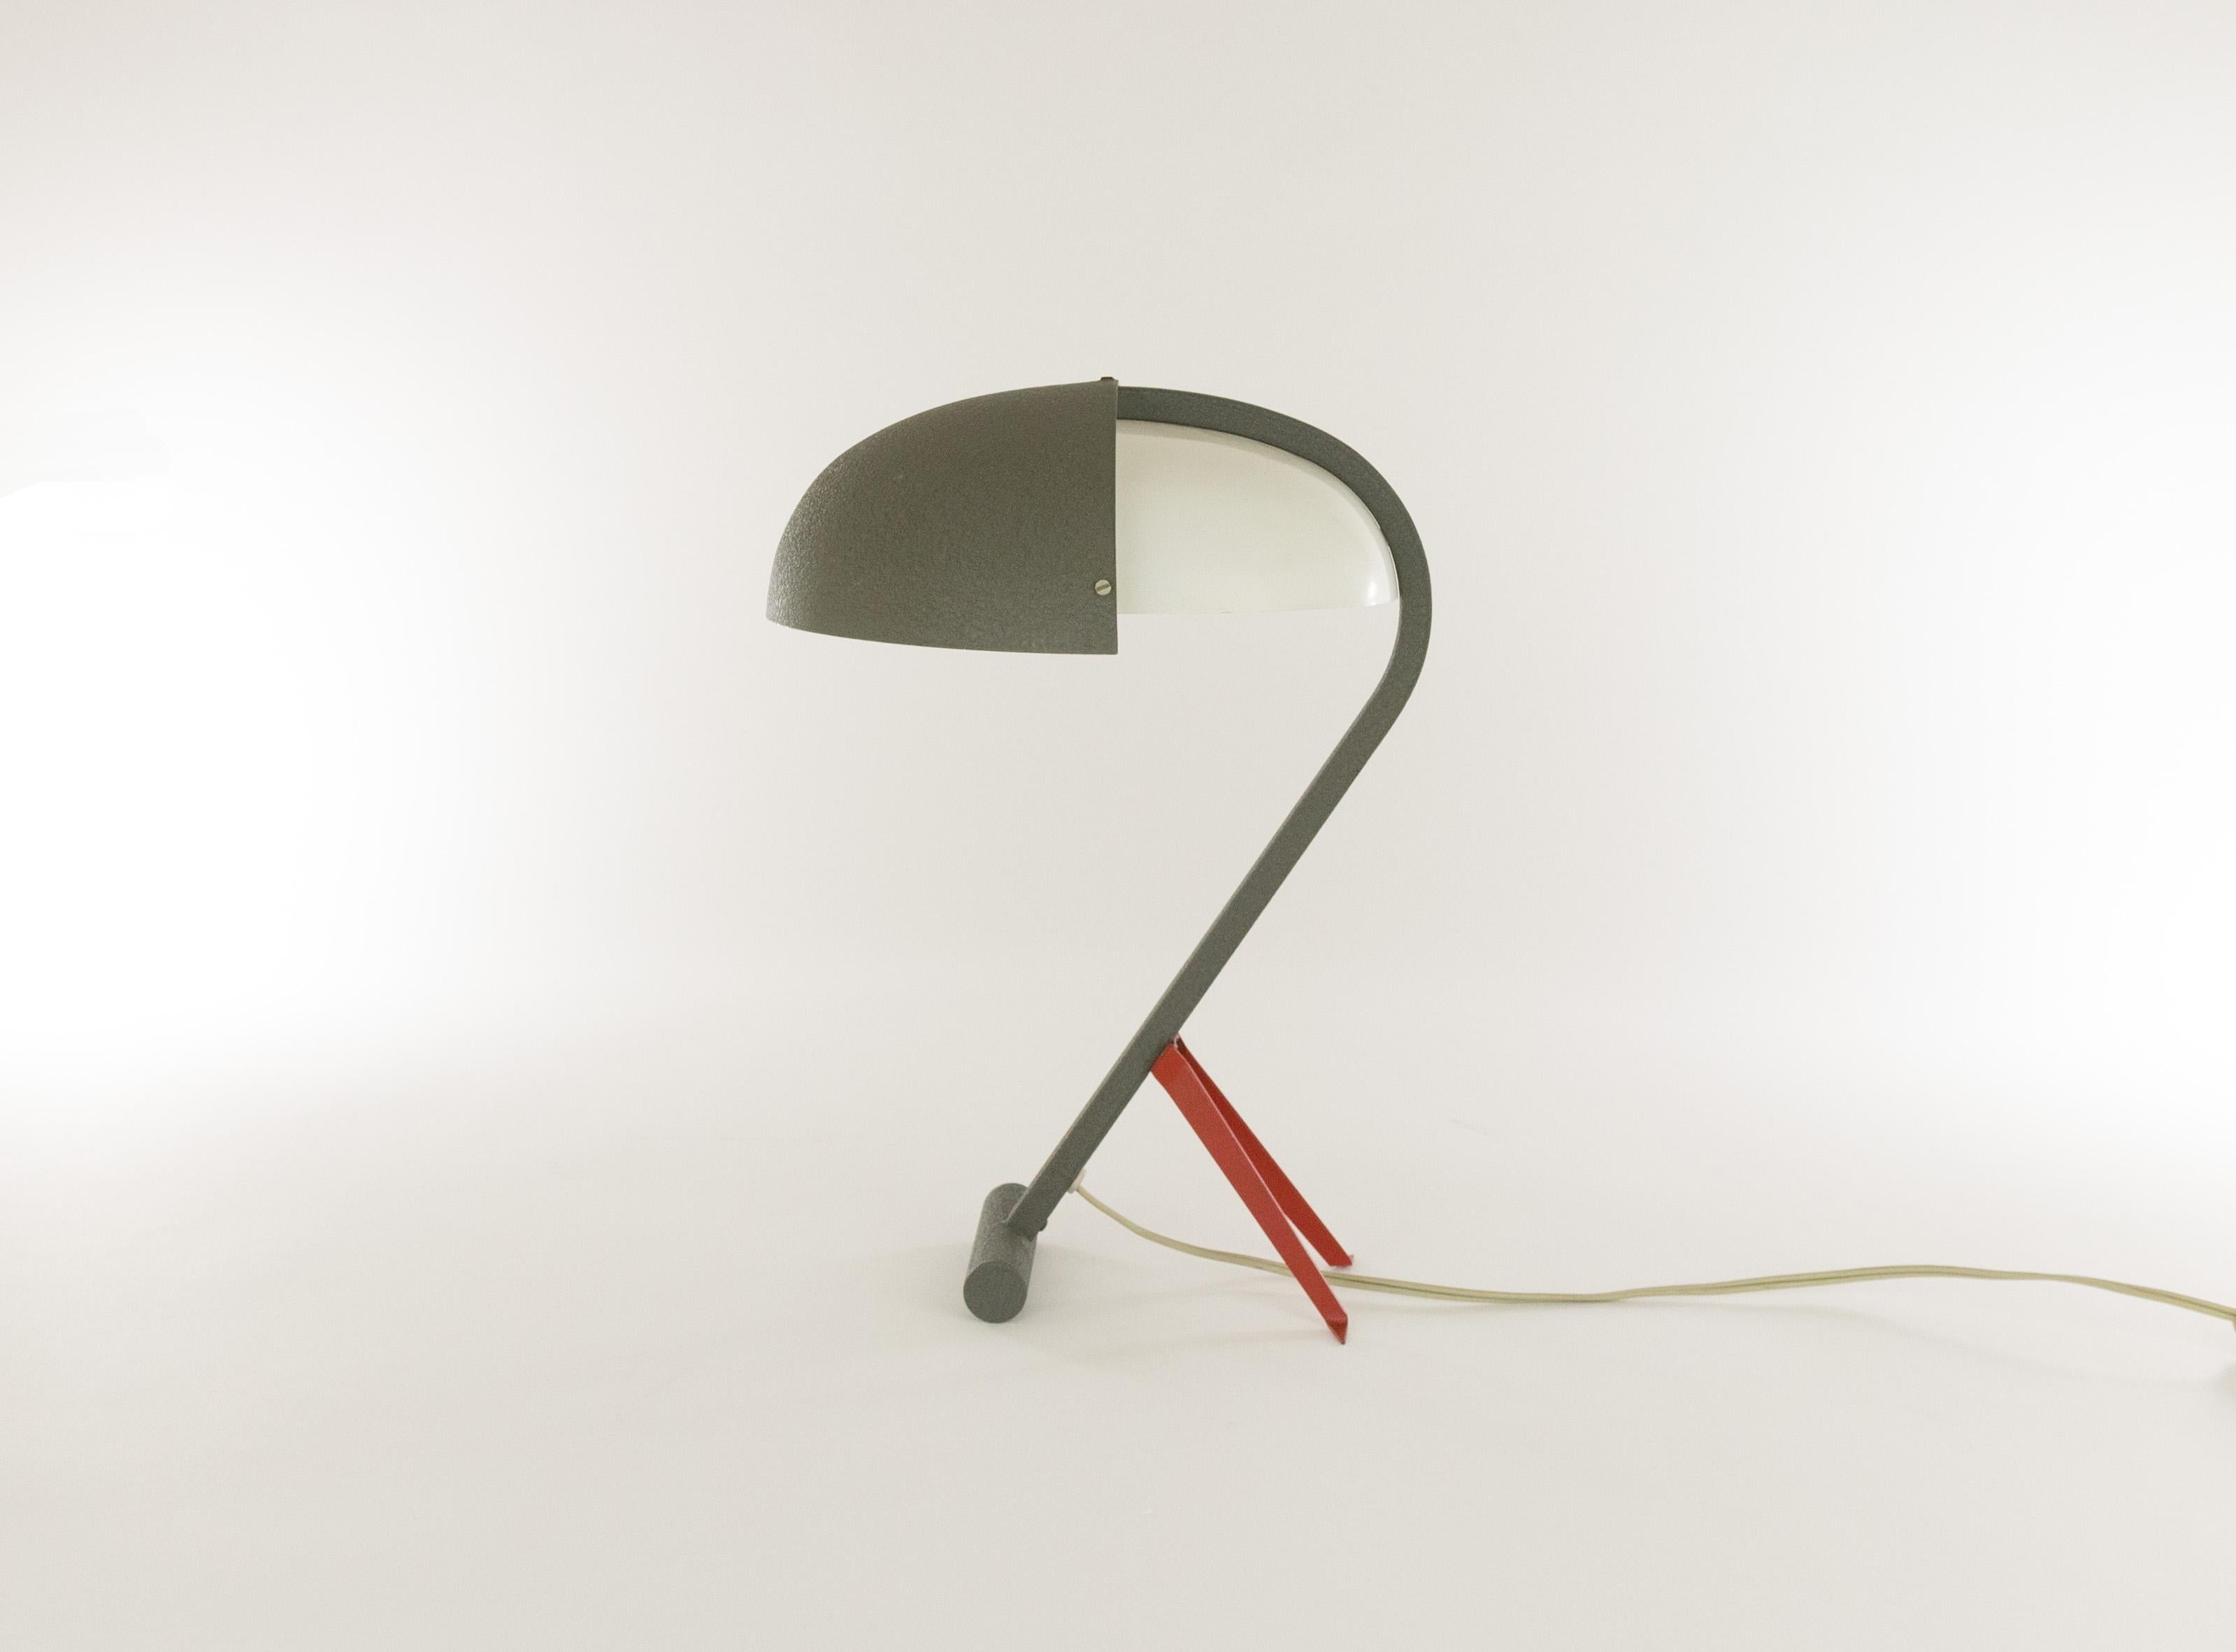 Rare lampe de table, modèle NX 110, conçue par Louis Christiaan Kalff pour Philips Eindhoven.

Il a une structure en acier gris ; l'abat-jour est réalisé dans le même matériau et en métal peint en blanc. Les petits pieds de soutien rouges